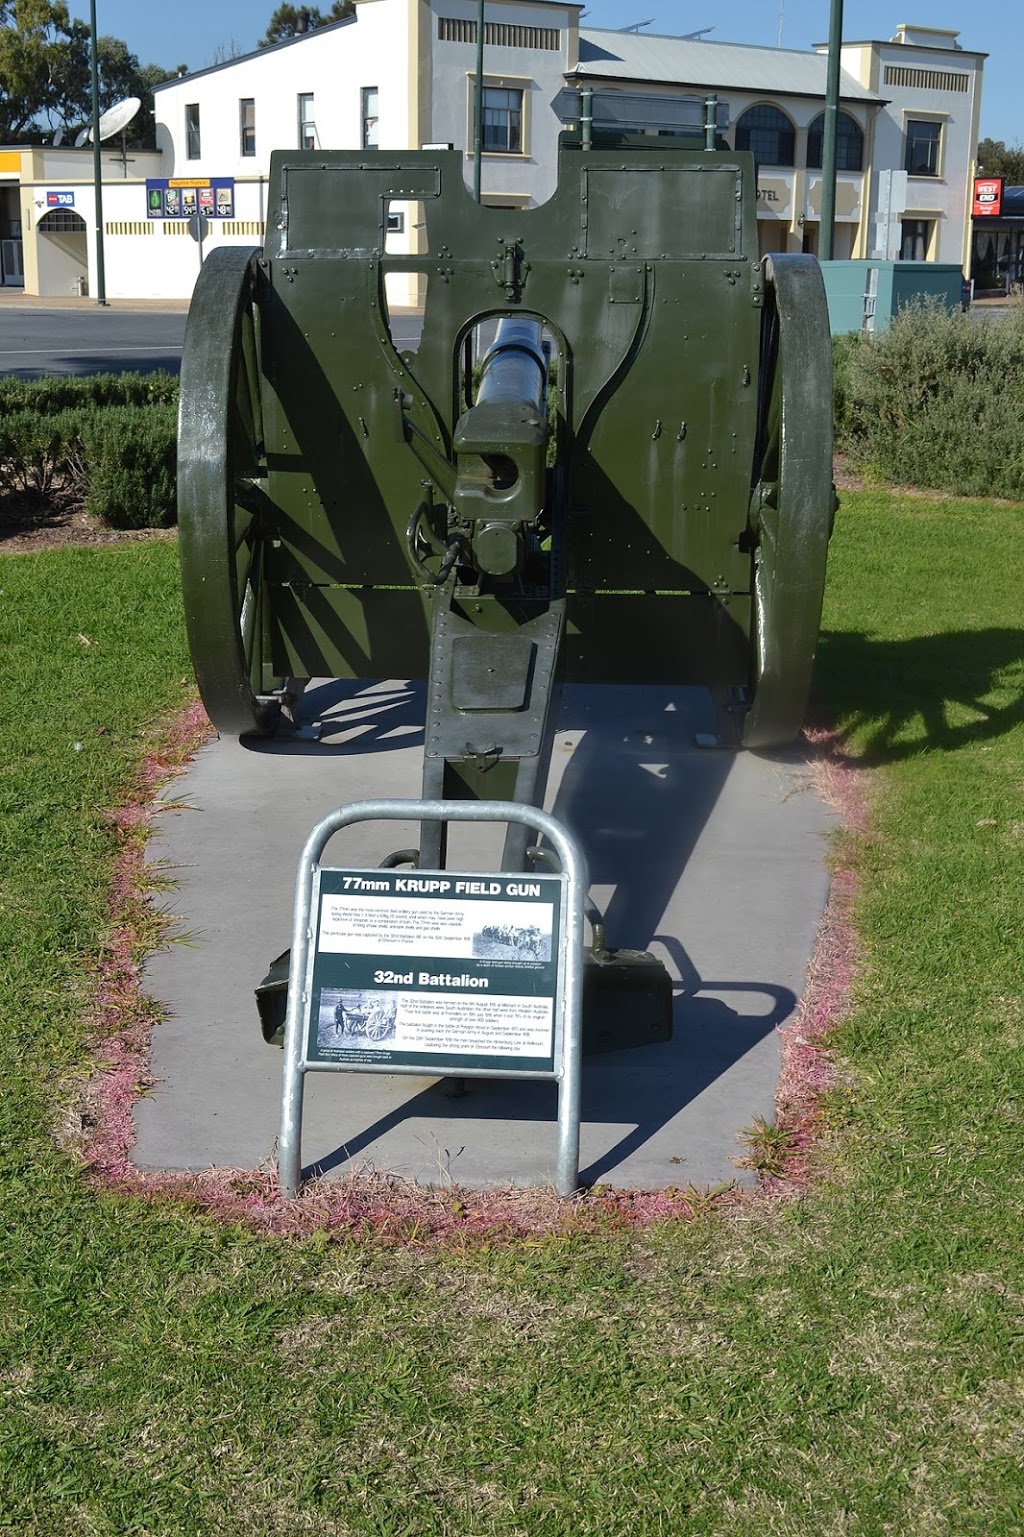 Soldiers Memorial Park | 54 Princes Hwy, Meningie SA 5264, Australia